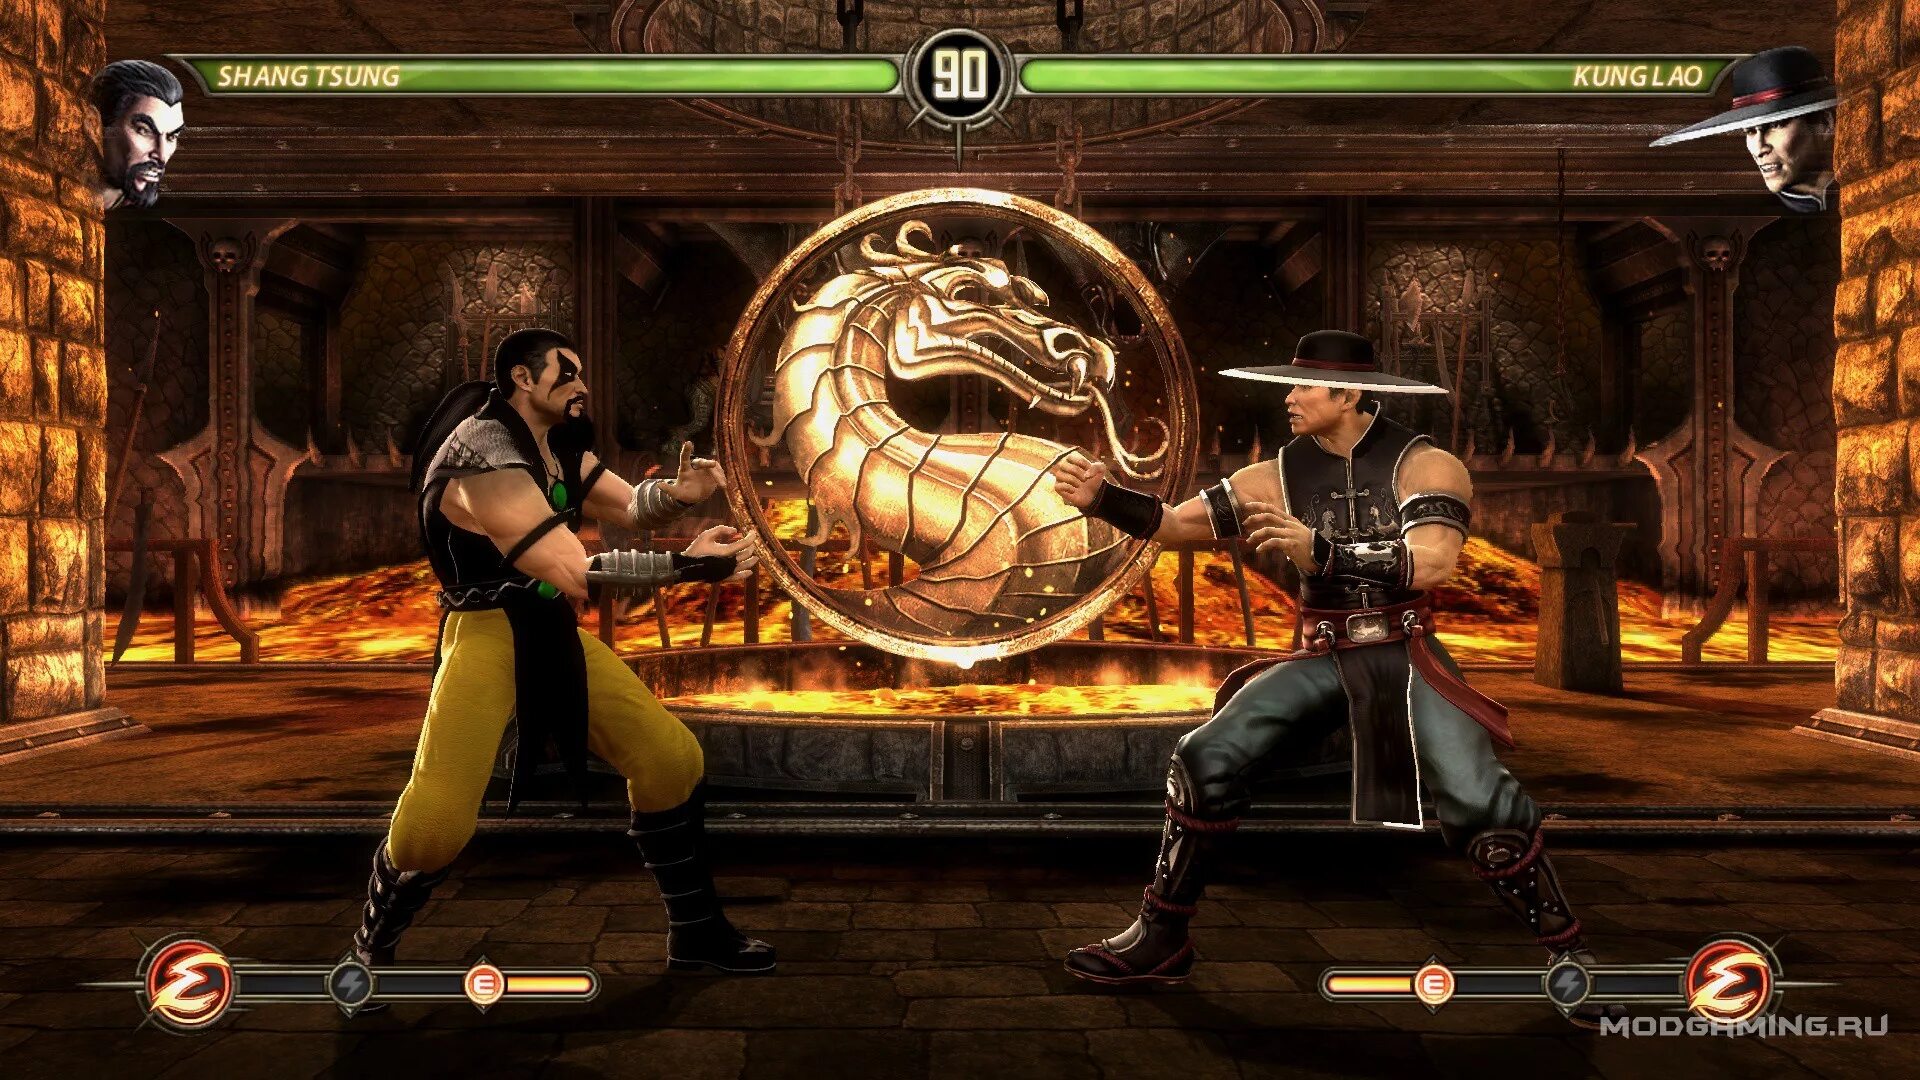 Шанг Цунг мортал комбат 3. Игра мортал комбат игра мортал комбат. Mortal Mortal Kombat 3 Shang Tsung. Mortal Kombat 2002. Игры мортал комбат по порядку